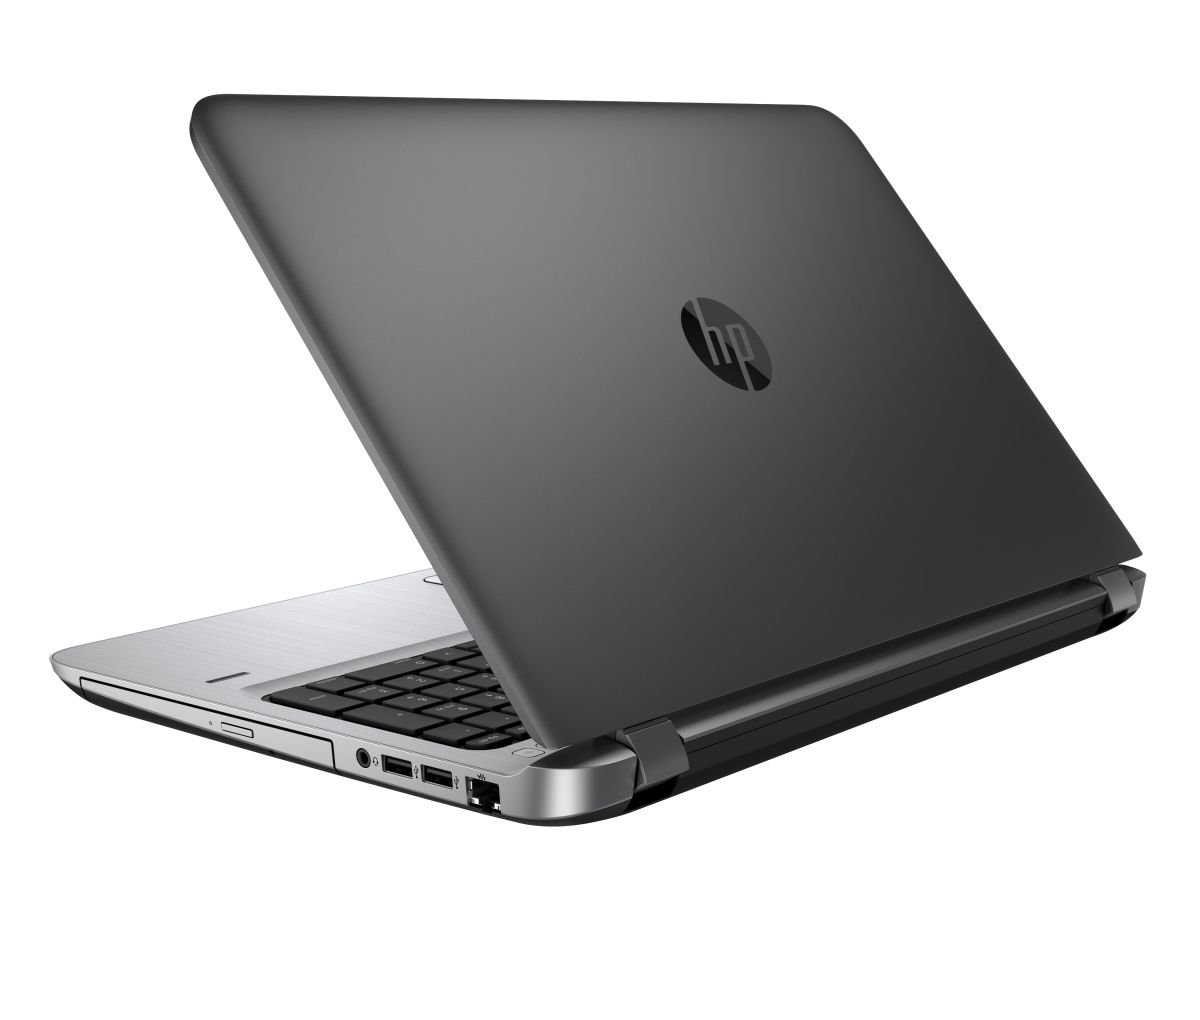 Hymne vriendelijke groet cocaïne HP ProBook ProBook 450 G3 Notebook PC (ENERGY STAR) - W0S81UT laptop  specifications